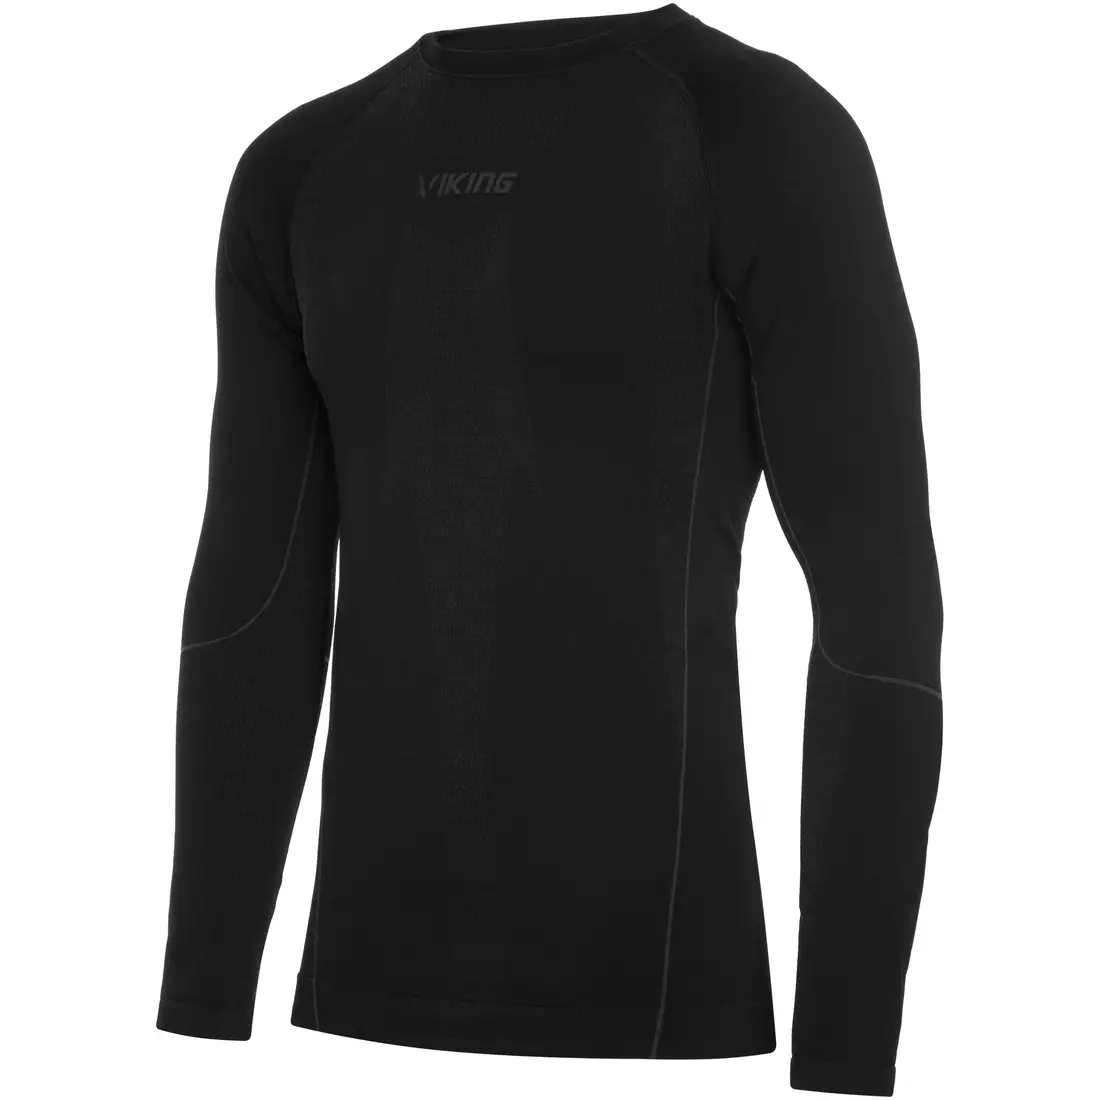 VIKING tricou termoactiv pentru bărbați cu mânecă lungă EIGER 500/21/2081/09